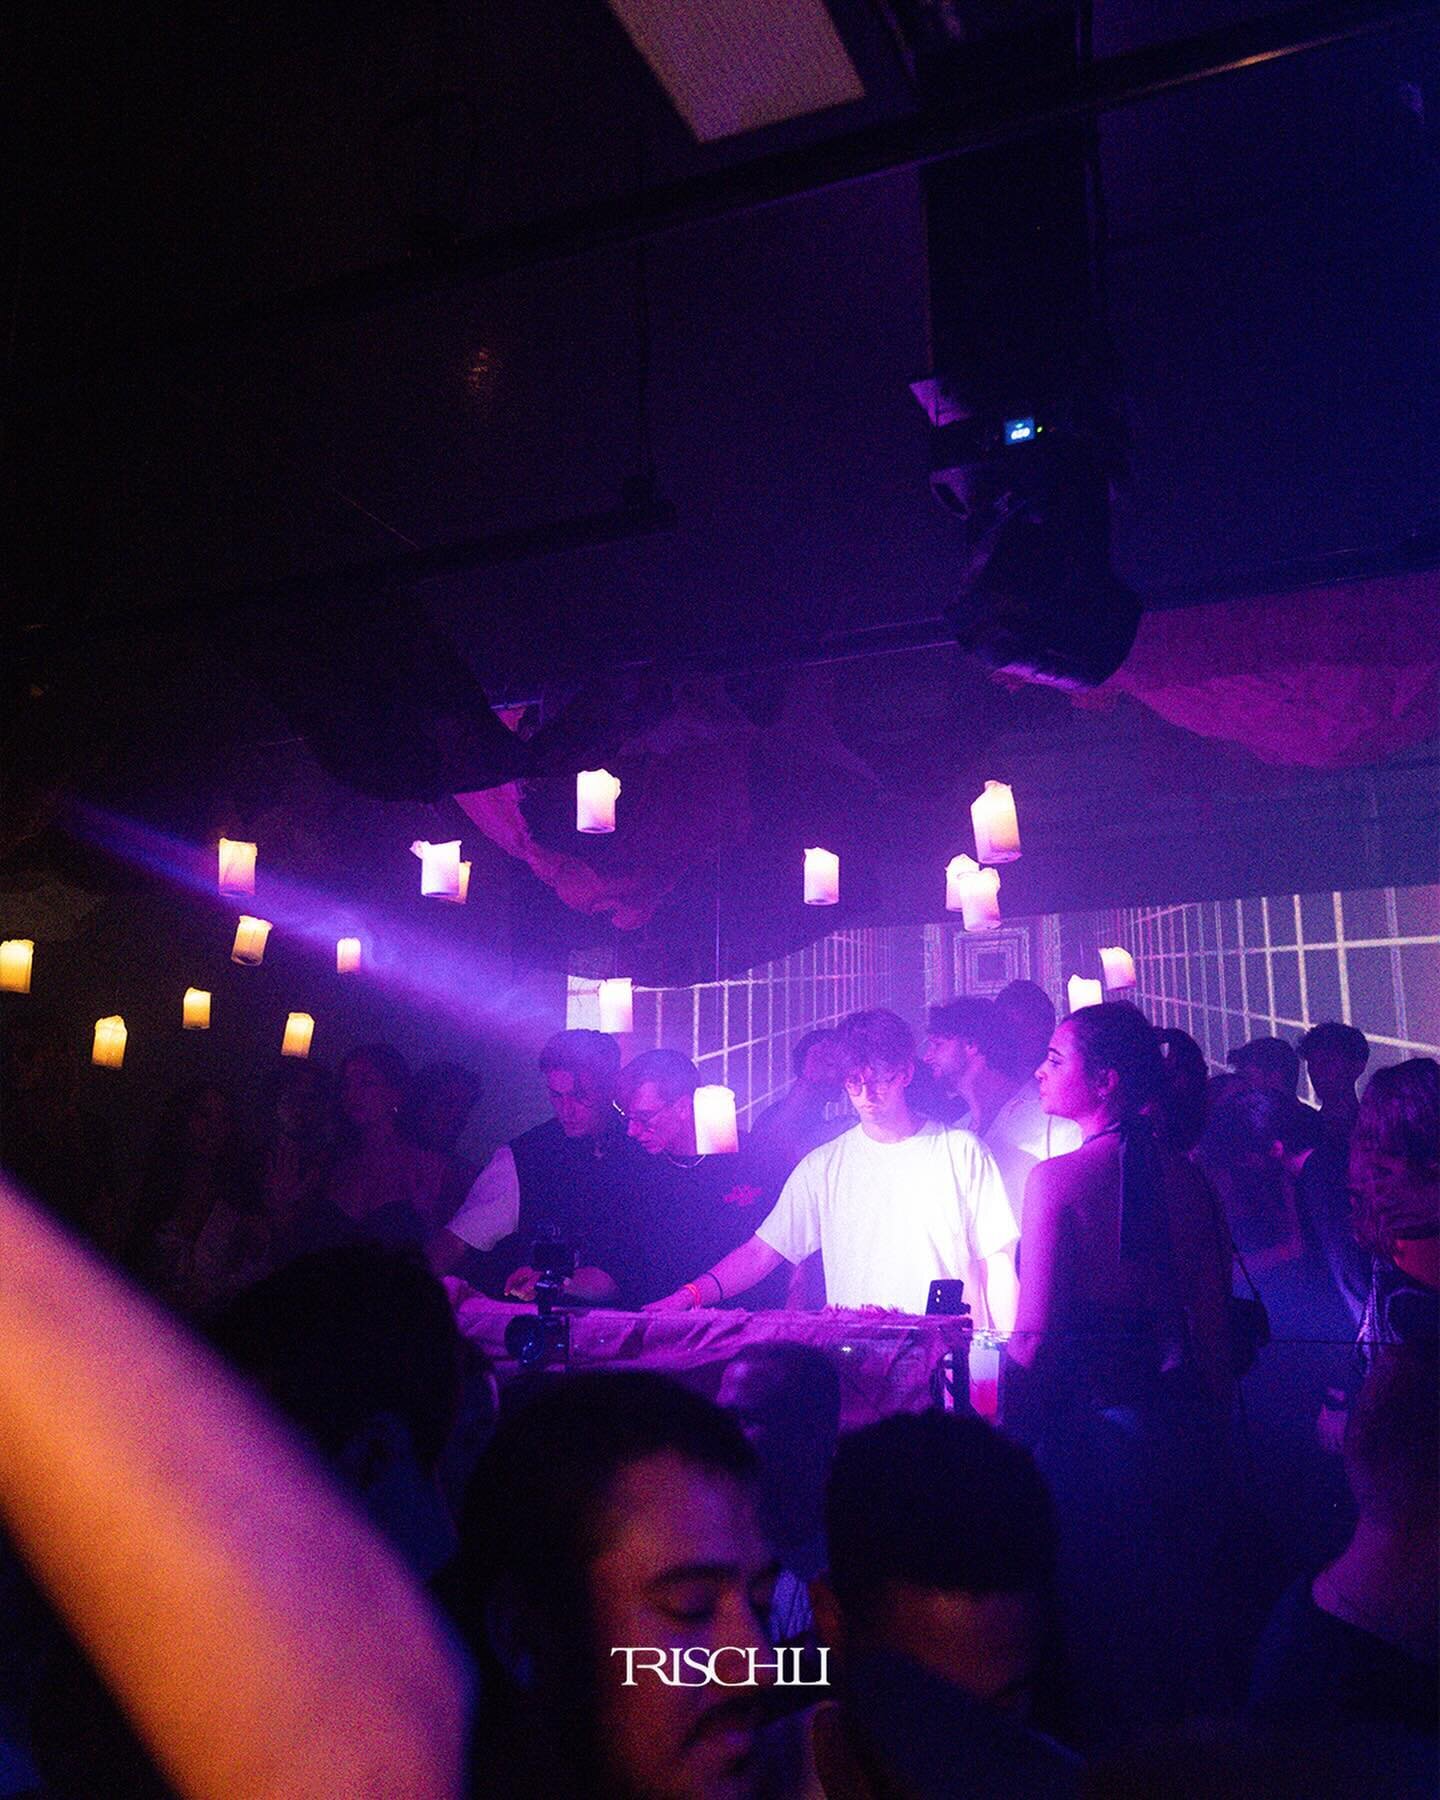 NIGHTS ARE MEANT FOR MAKING MEMORIES. 🥳

#Trischli #trischlifam #SG #SGnightlife #nightclub #partytime #clubbing #nightlife